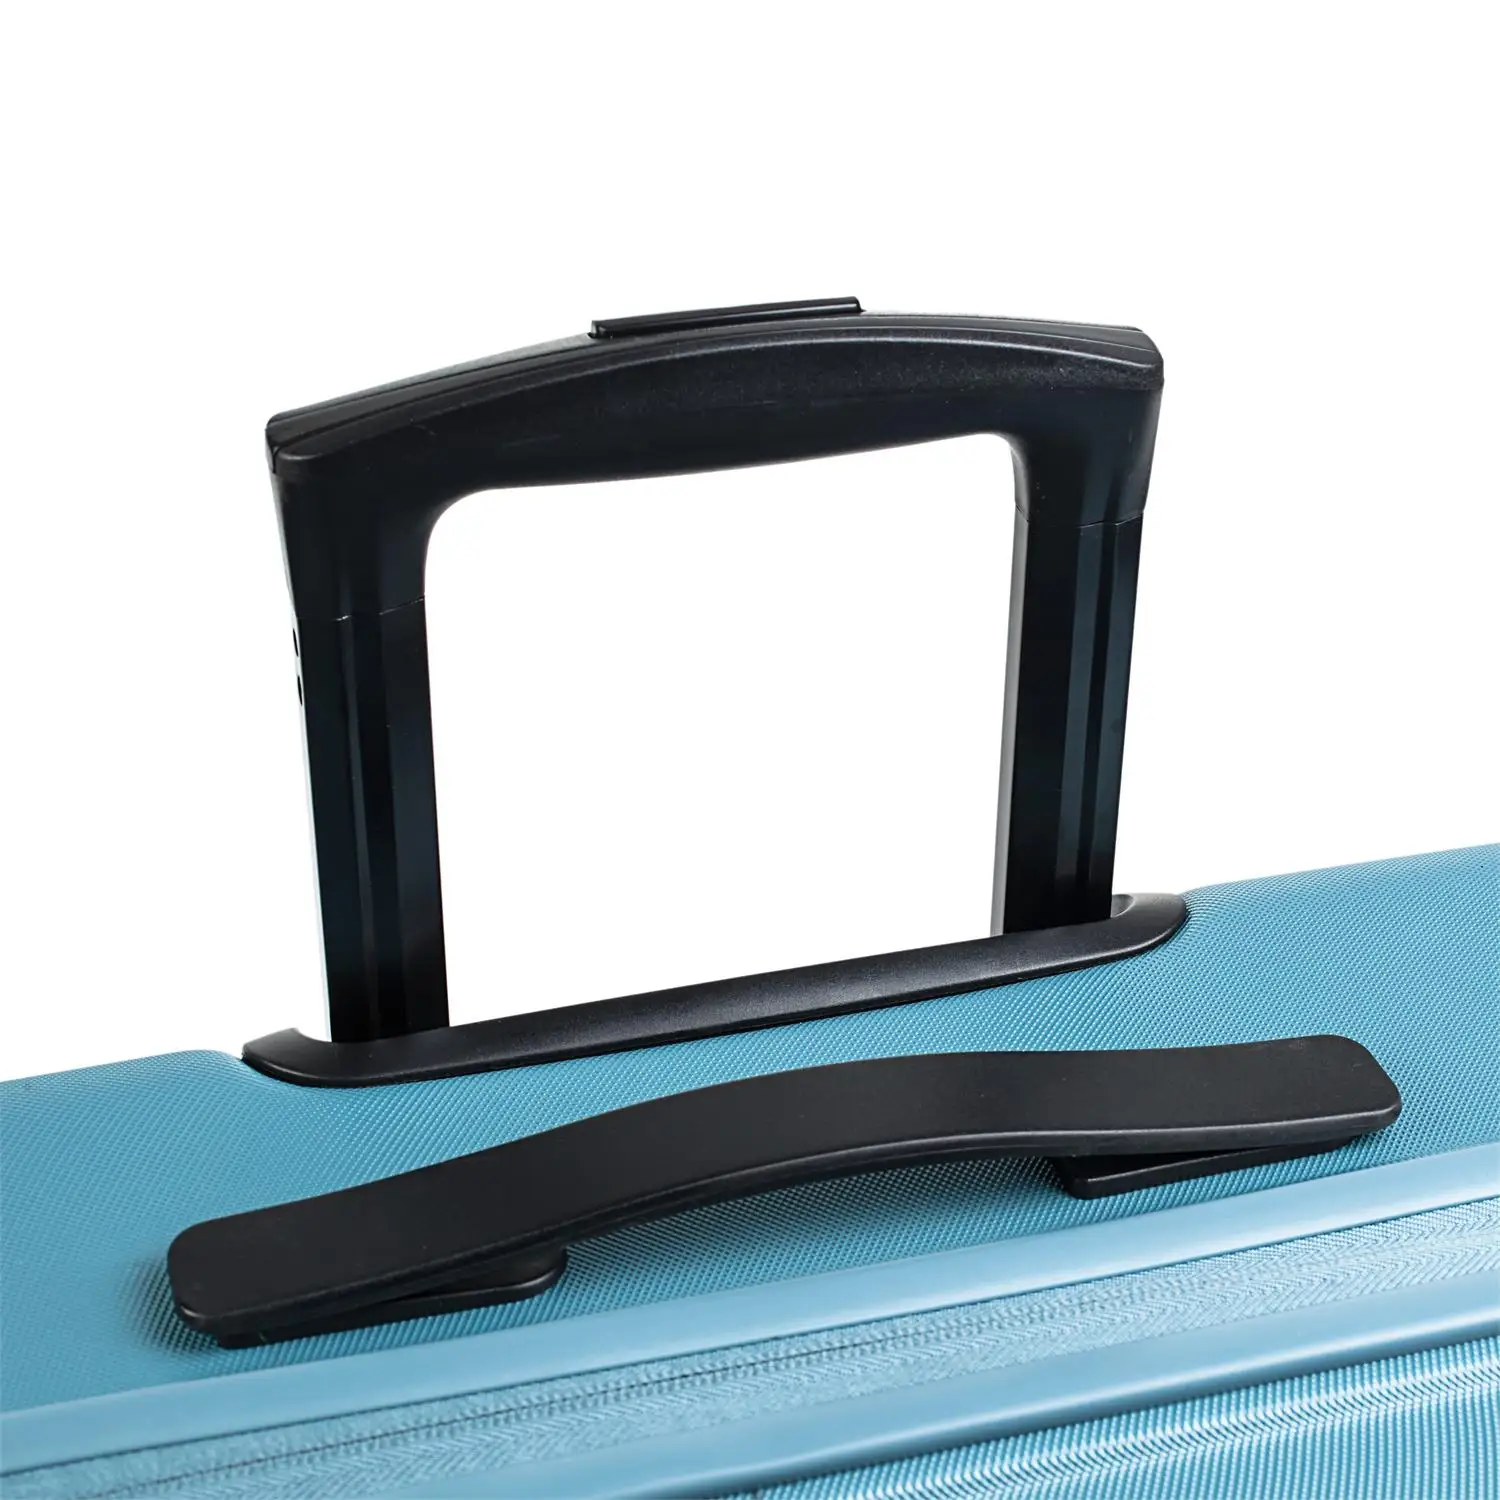 Juego набор 3 чемоданы тележки 55/66/76 см из АБС-пластика с рельефным рисунком. Жесткий, устойчивый и легкий. Ручка Telescó